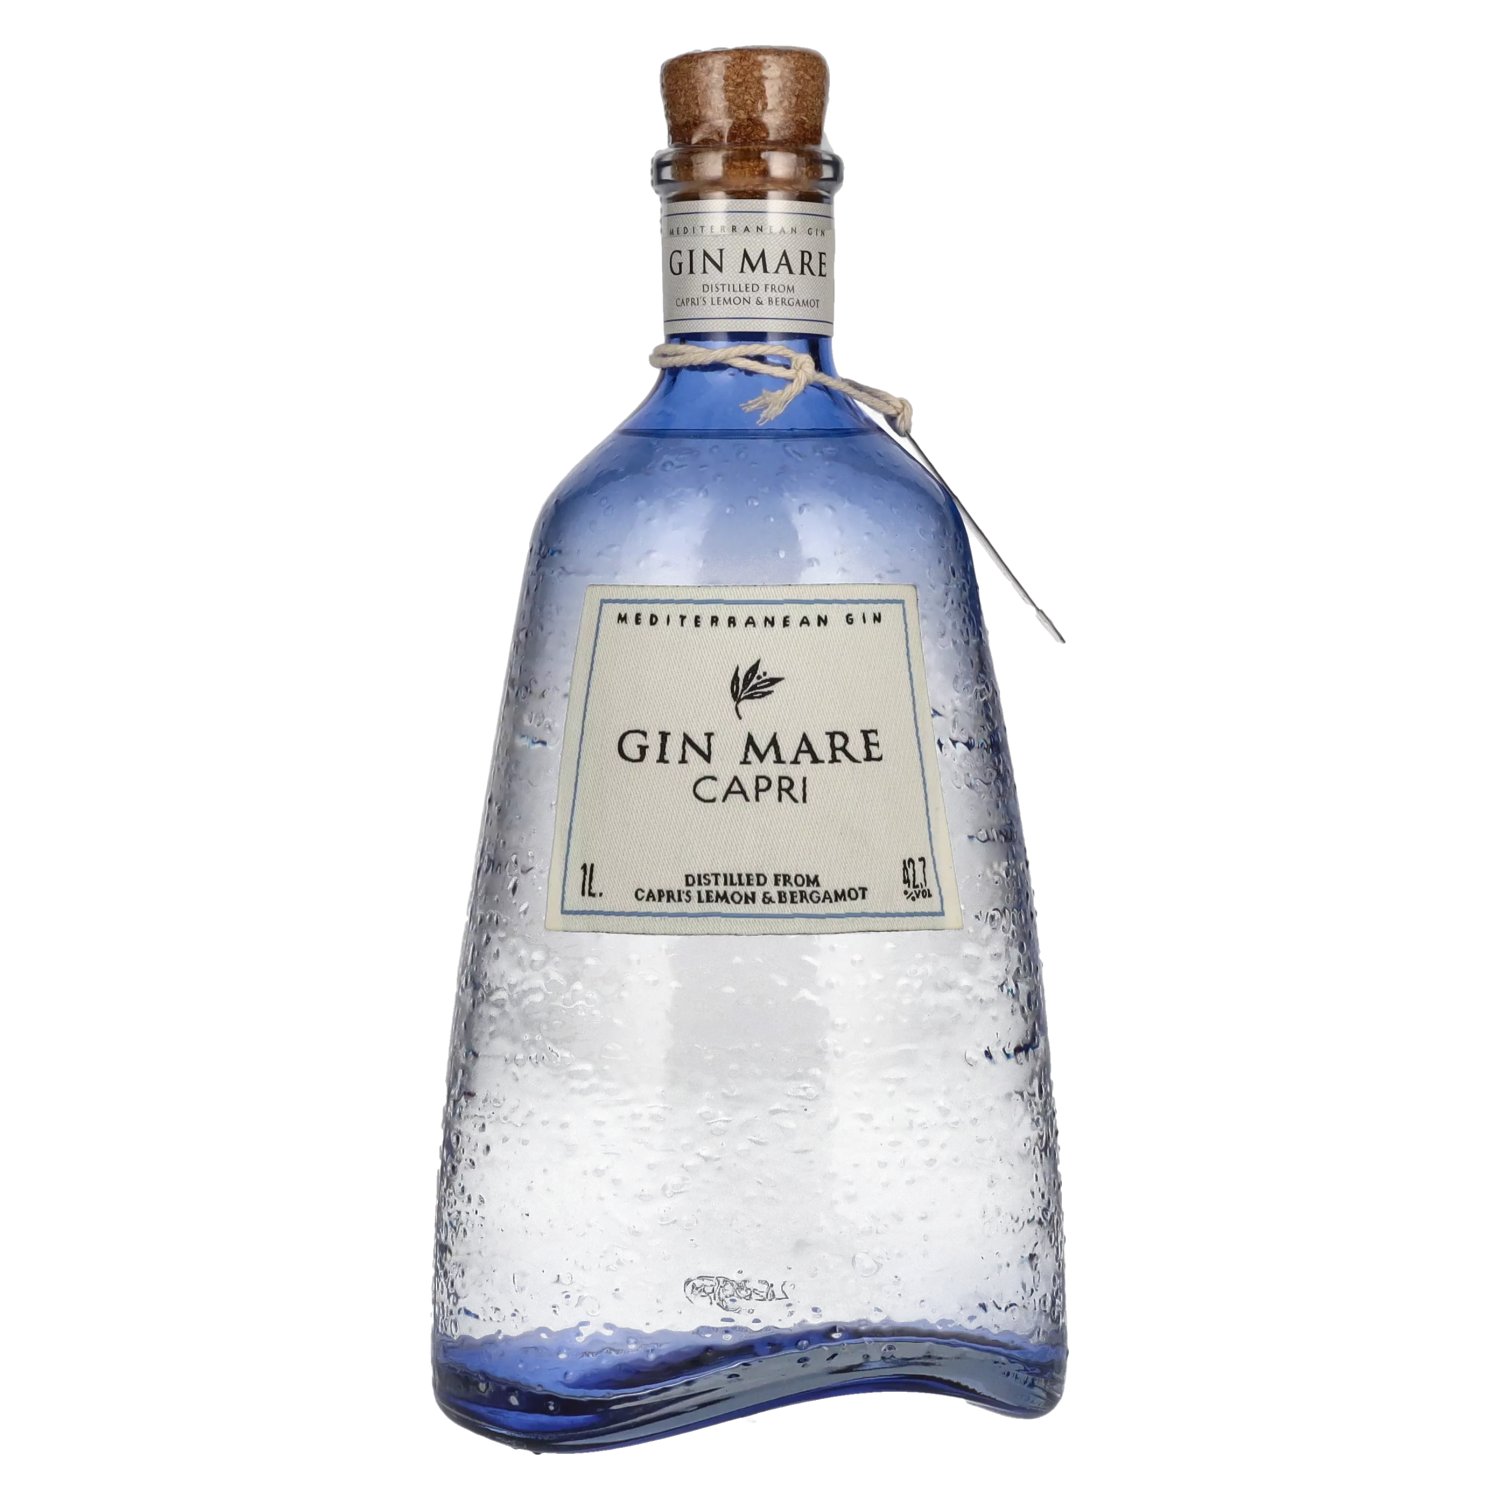 Gin Mare Mediterranean Gin Capri Limited 1l Edition 42,7% Vol